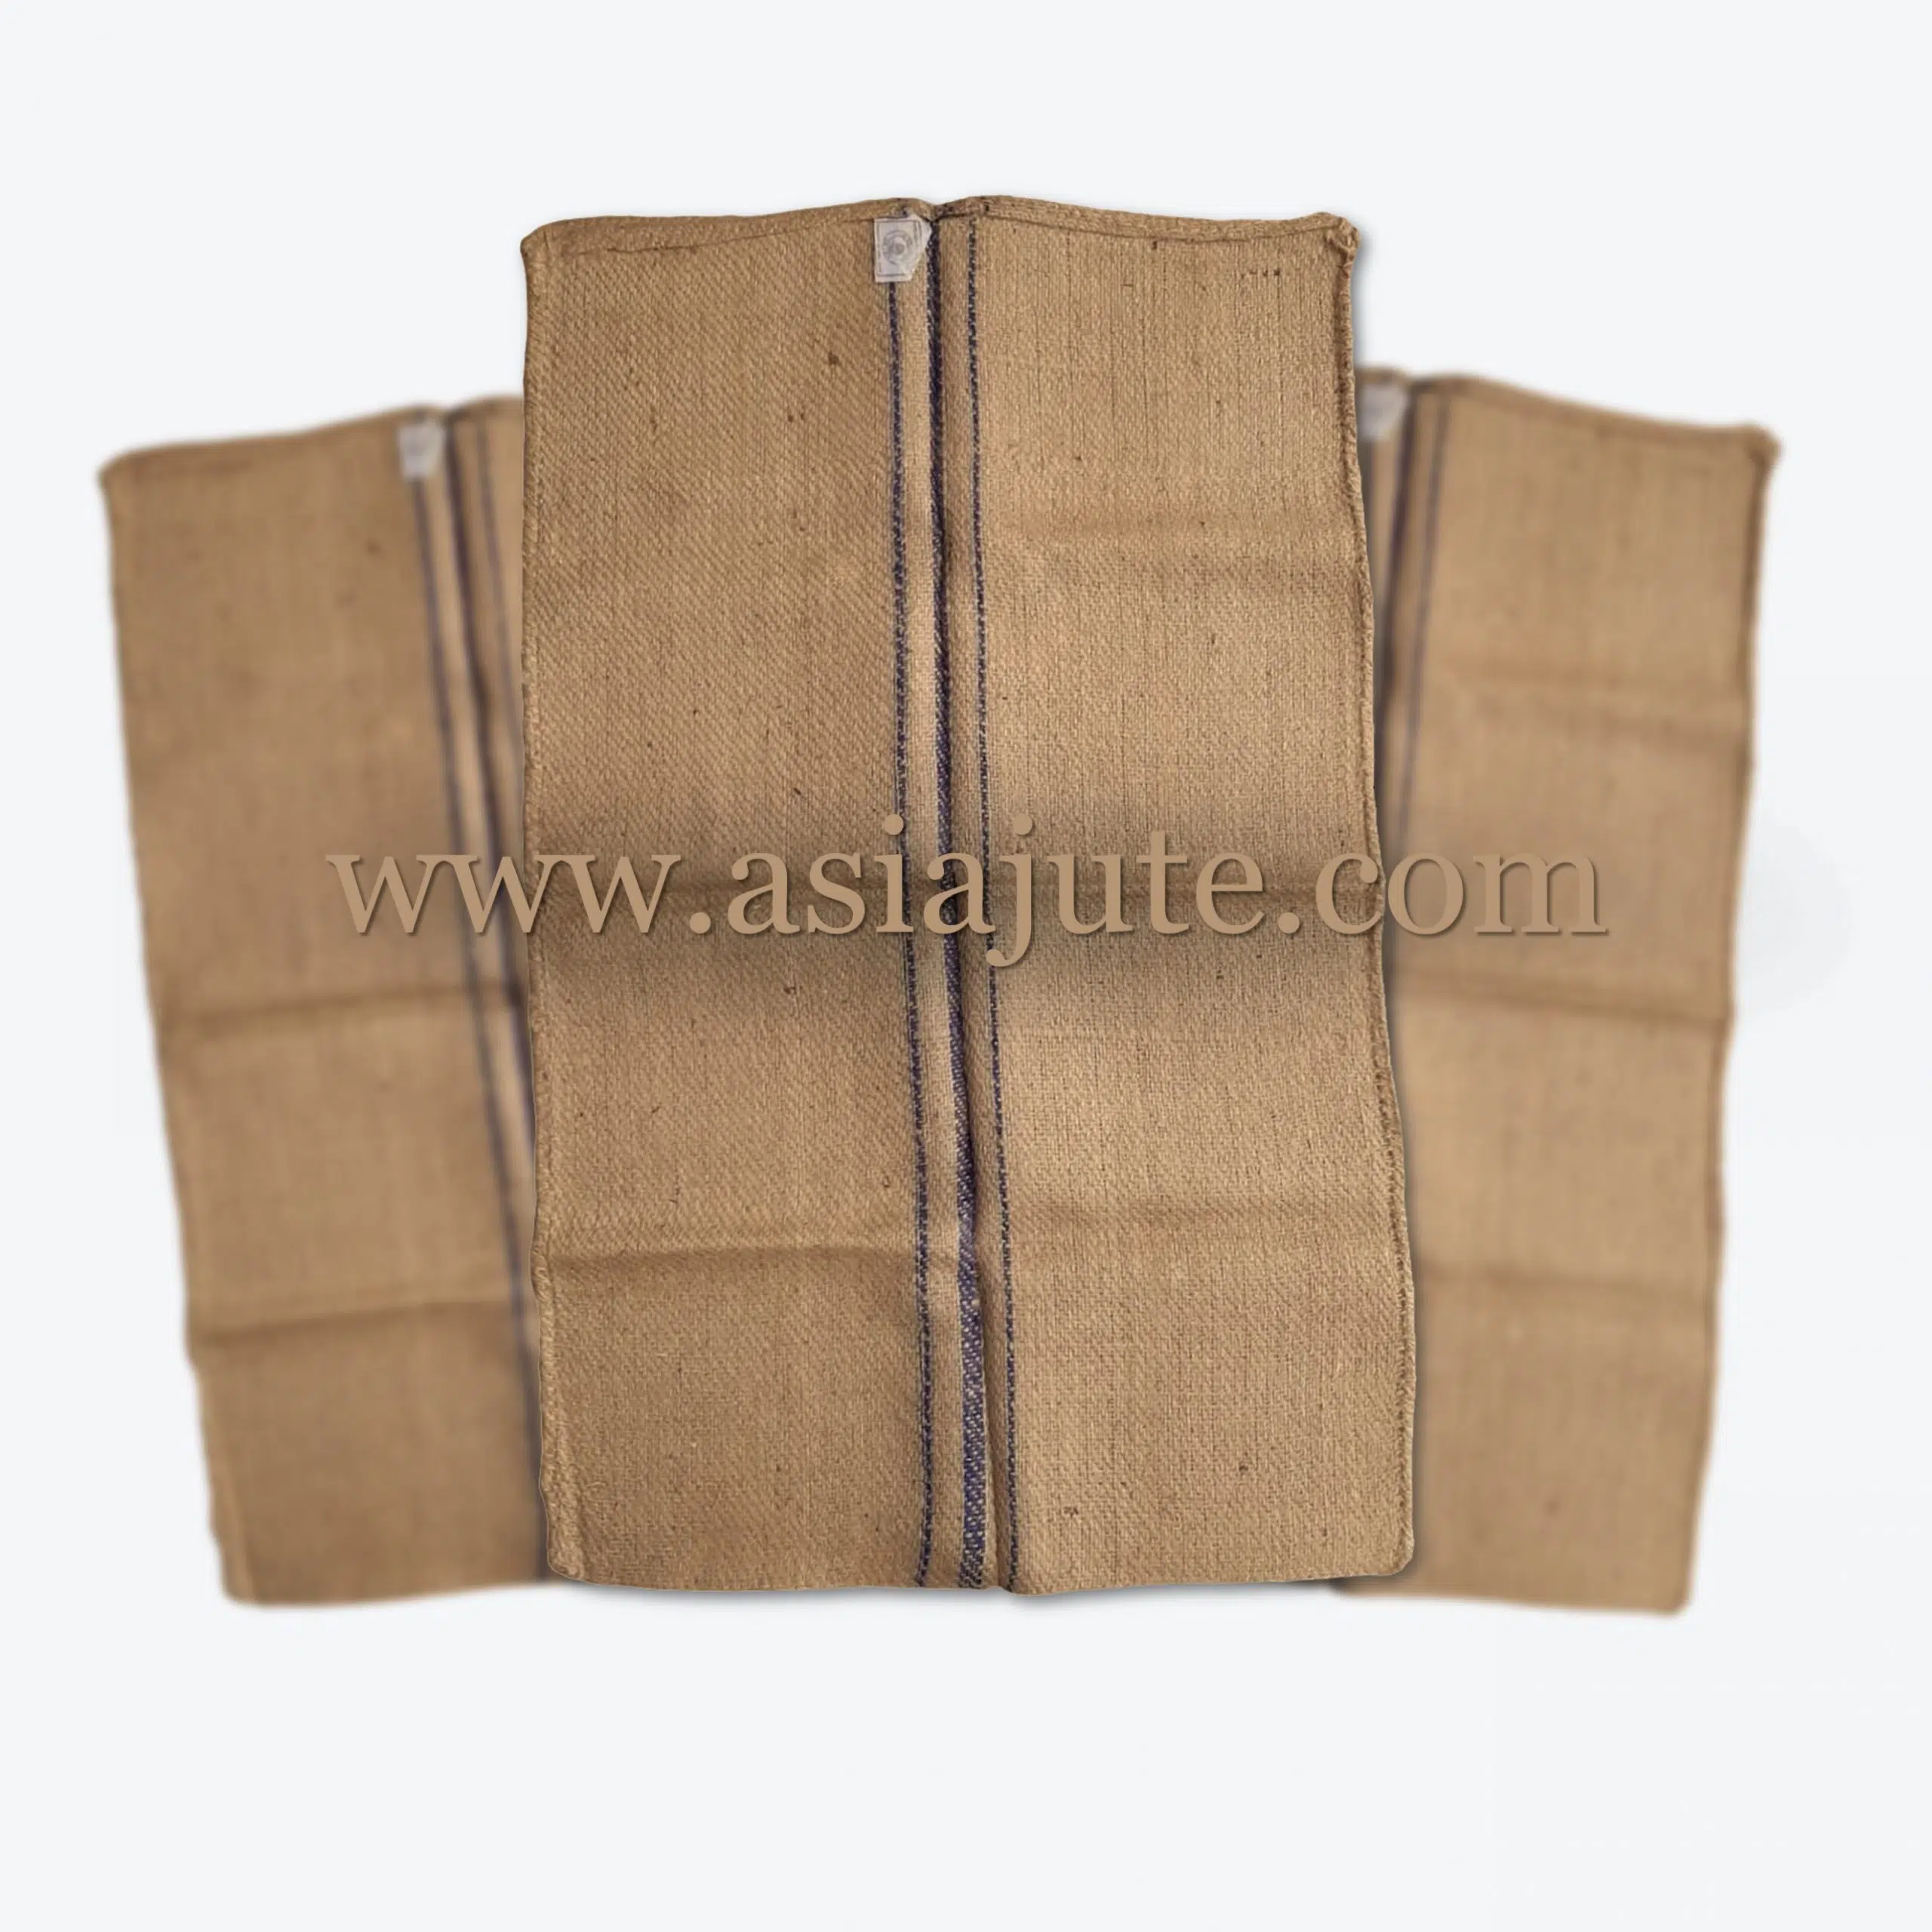 VOT Binola Jute Bag Manufacturer Exporter Wholesale Bangladesh Jute Bag